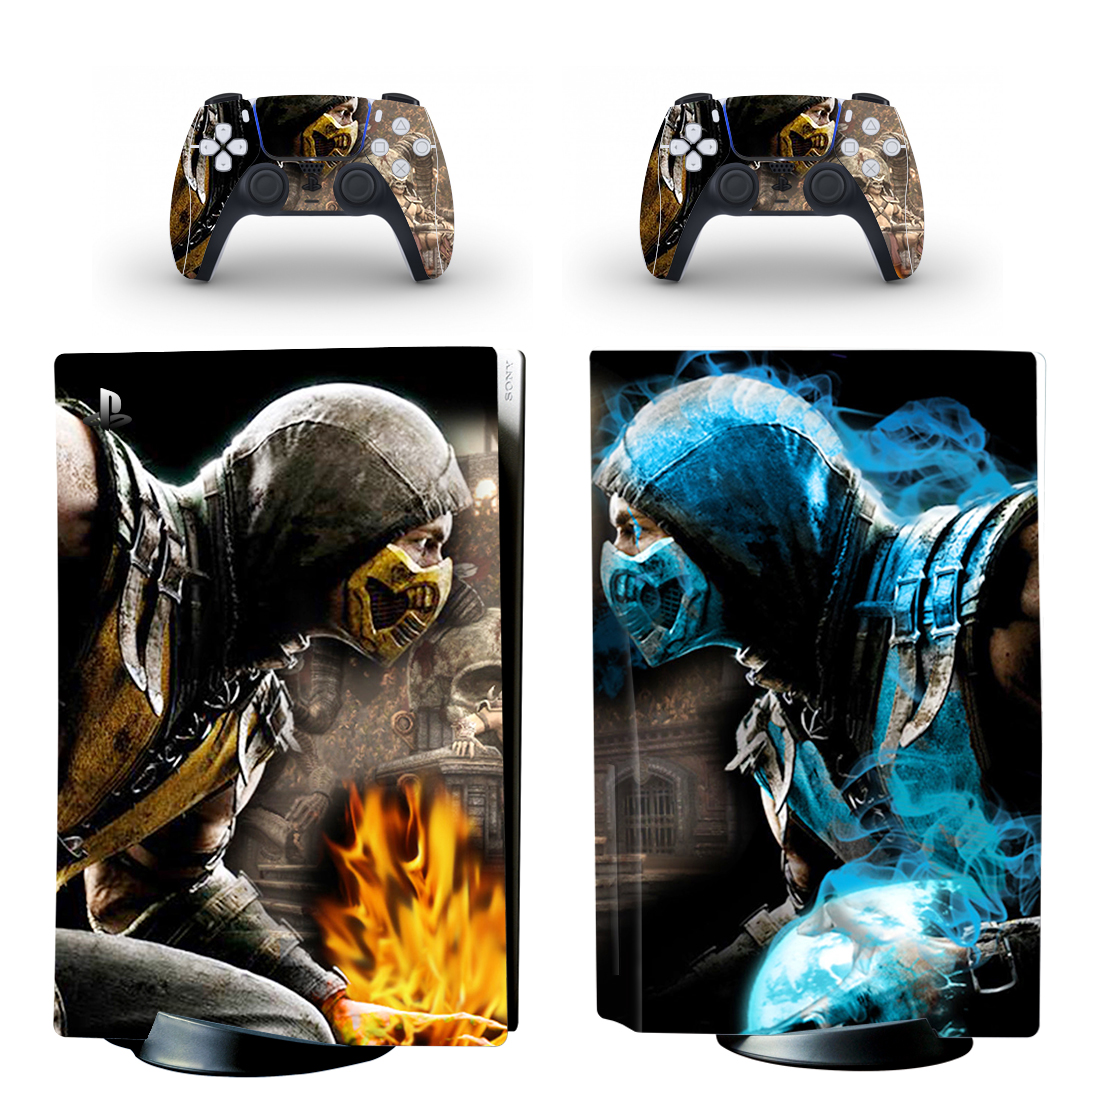 Mortal Kombat X Scorpion Vs Sub Zero PS5 Skin Sticker Decal